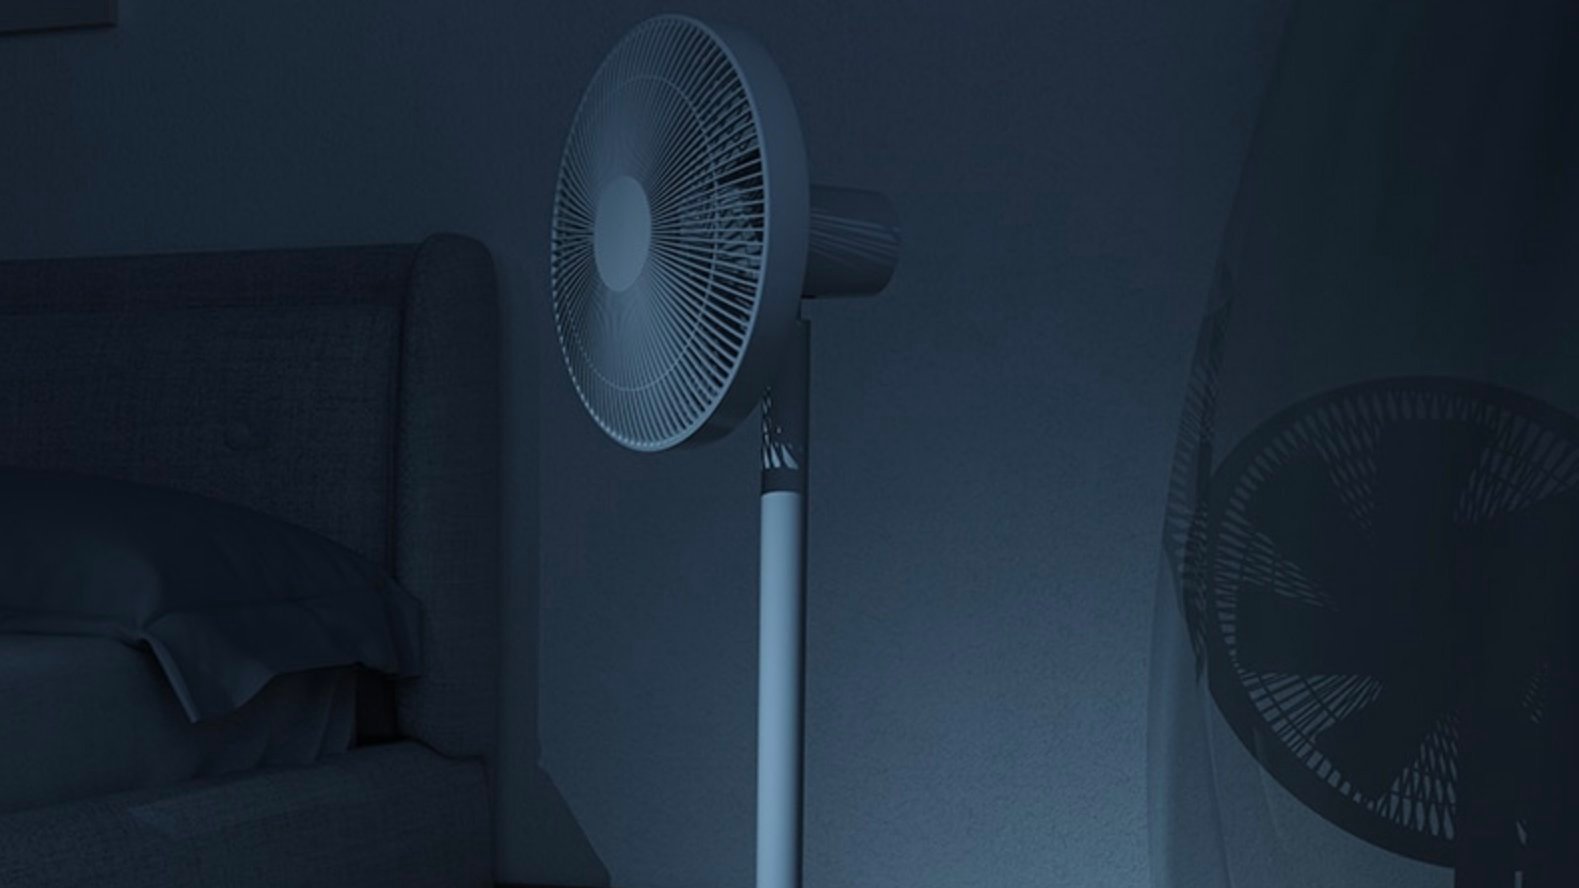 Le ventilateur de chez Xiaomi possède une vitesse de ventilation spécialement conçue pour la nuit.